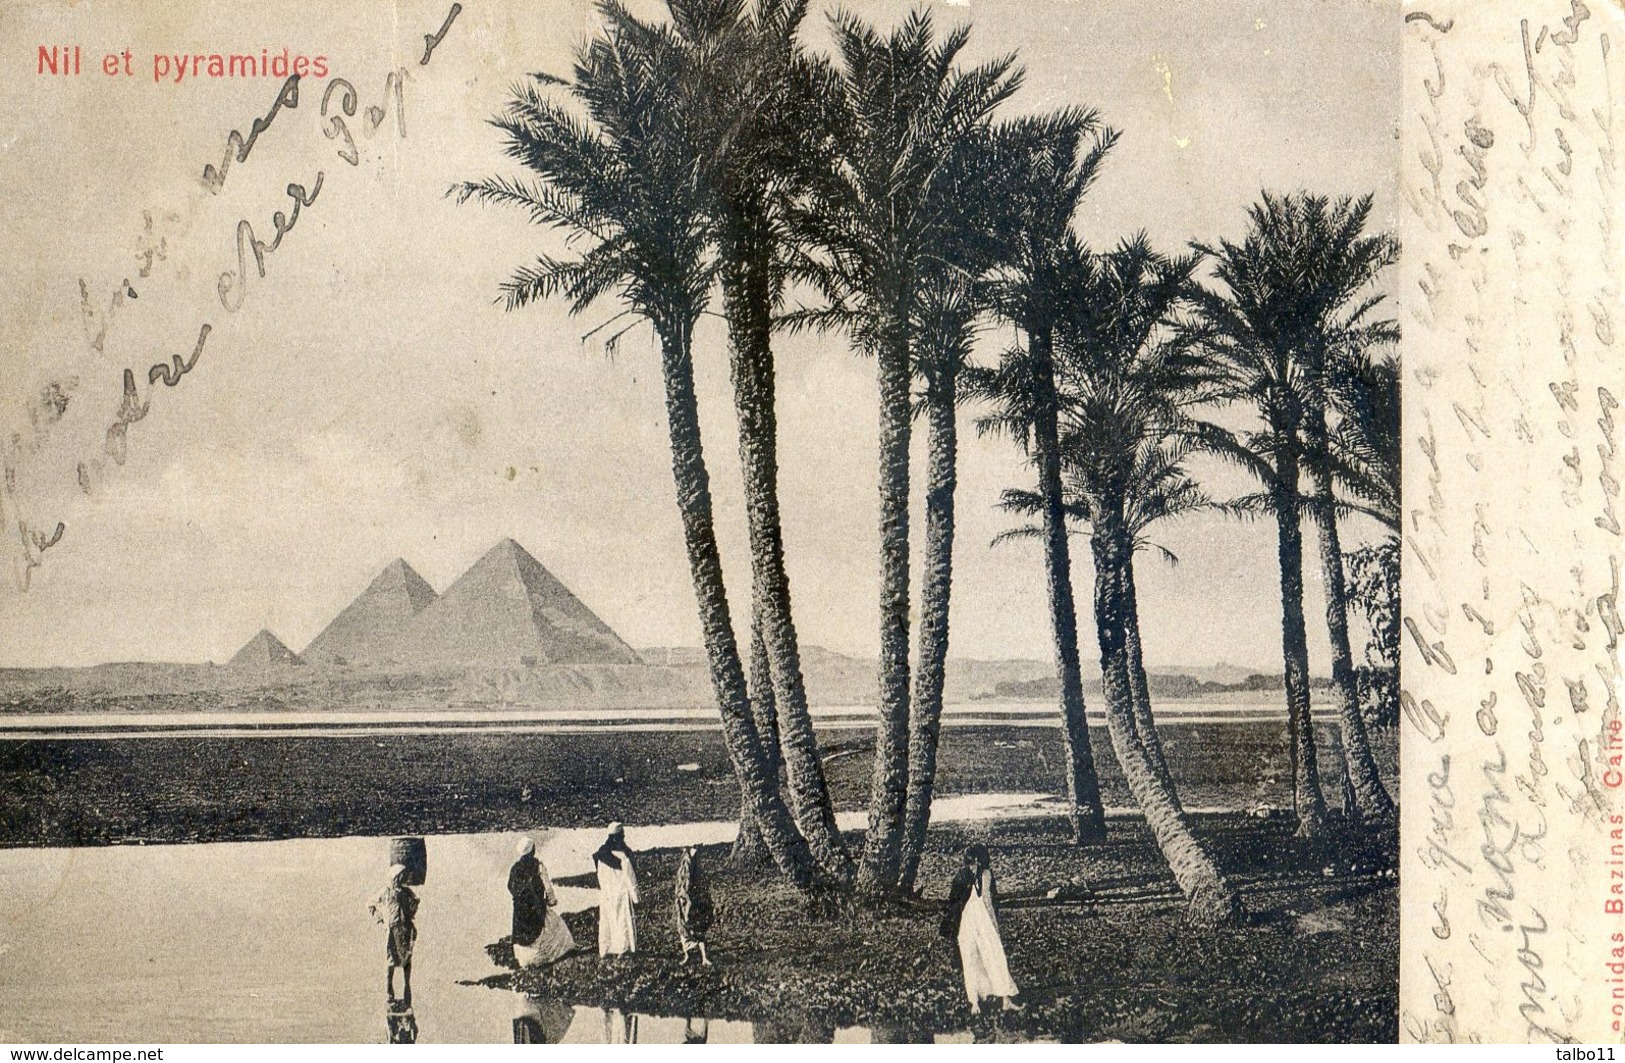 Nil Et Pyramides - Pyramids